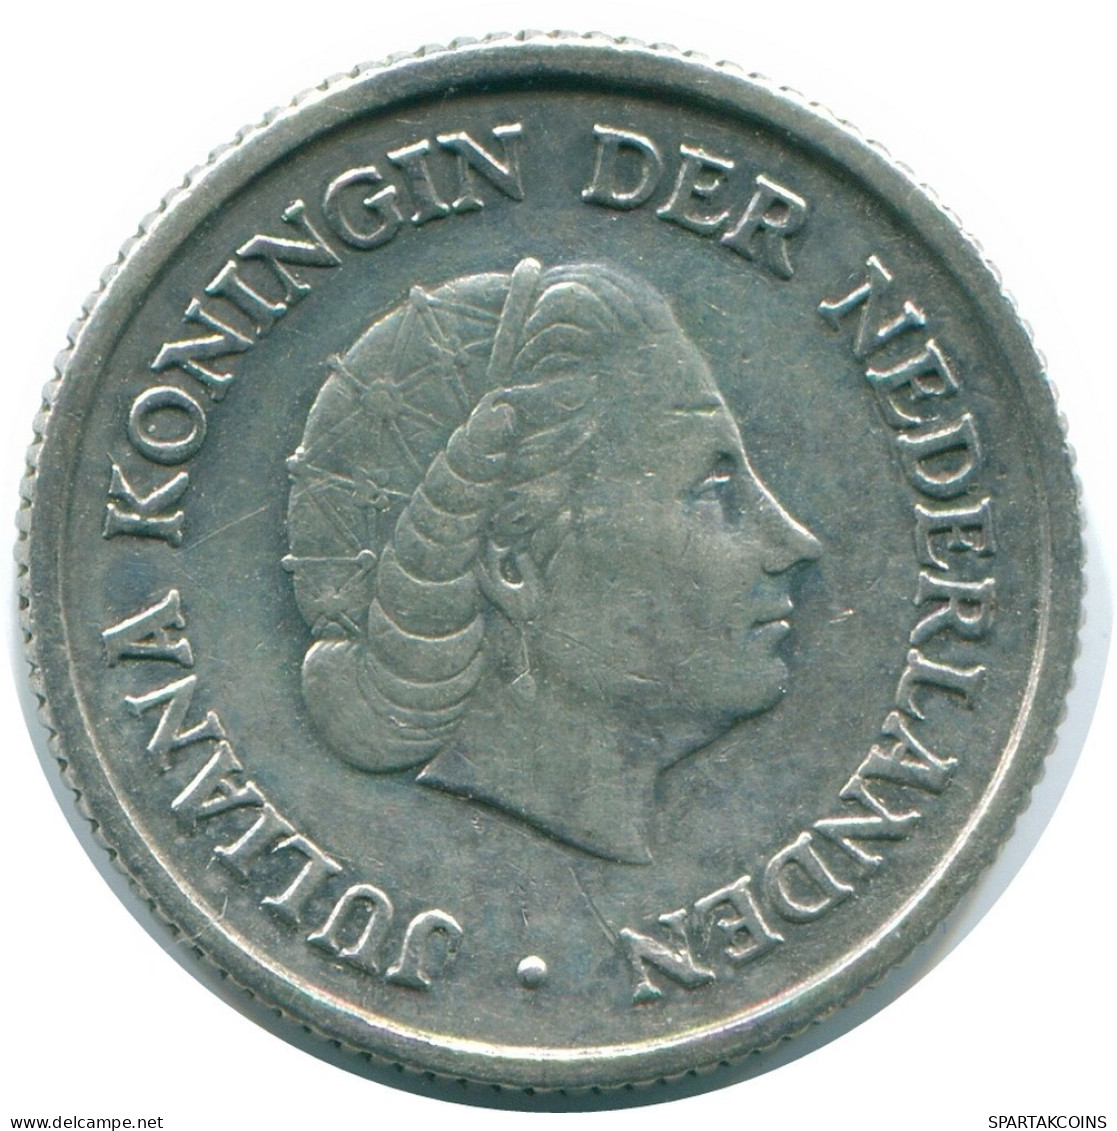 1/4 GULDEN 1957 NIEDERLÄNDISCHE ANTILLEN SILBER Koloniale Münze #NL10975.4.D.A - Antillas Neerlandesas